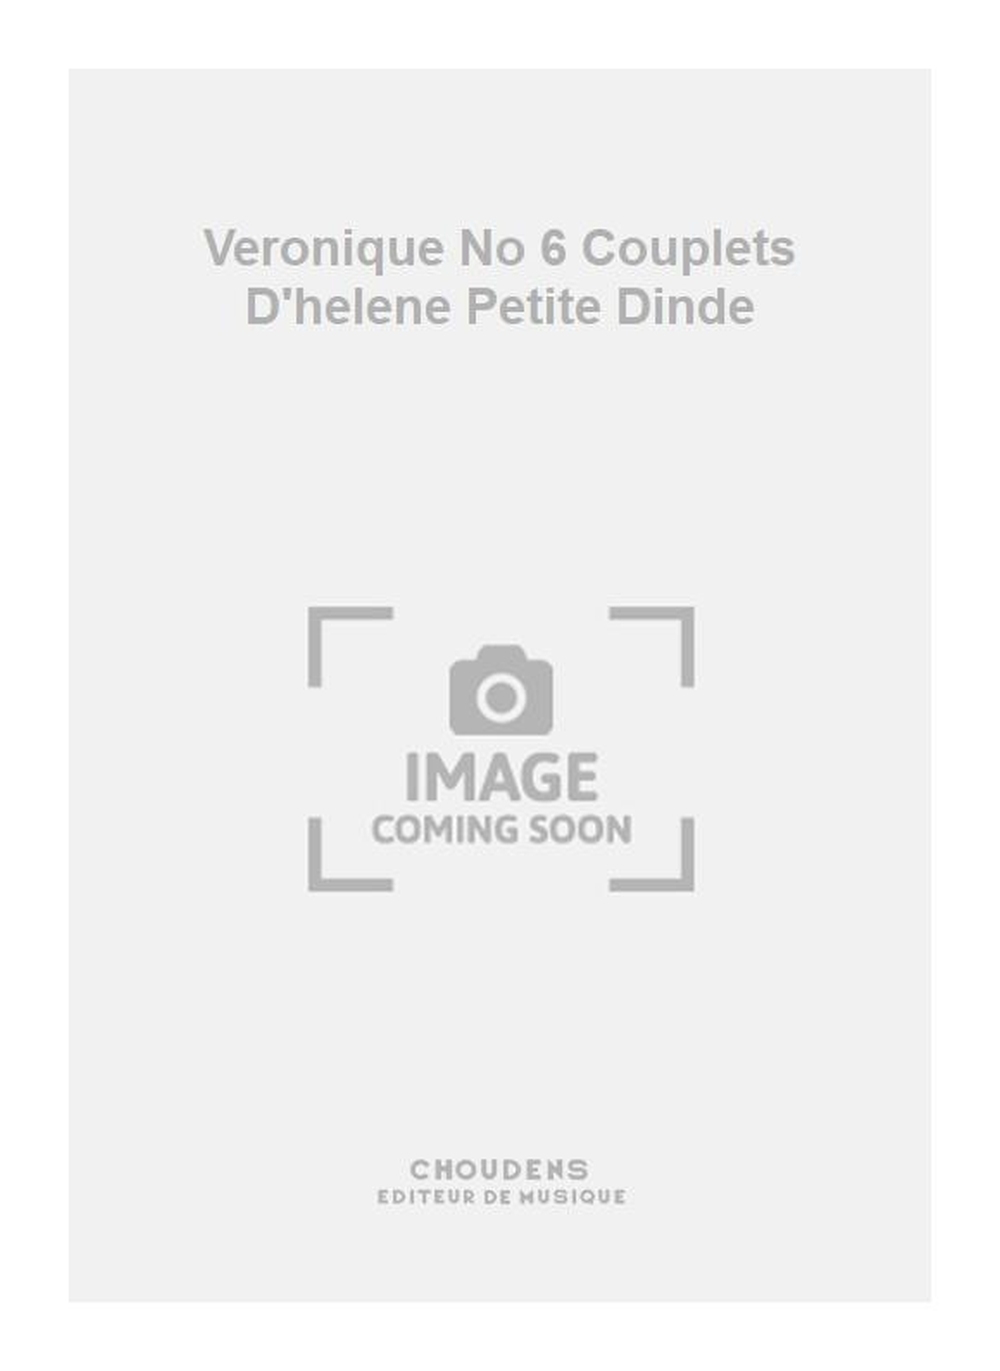 Messager: Veronique No 6 Couplets D'helene Petite Dinde